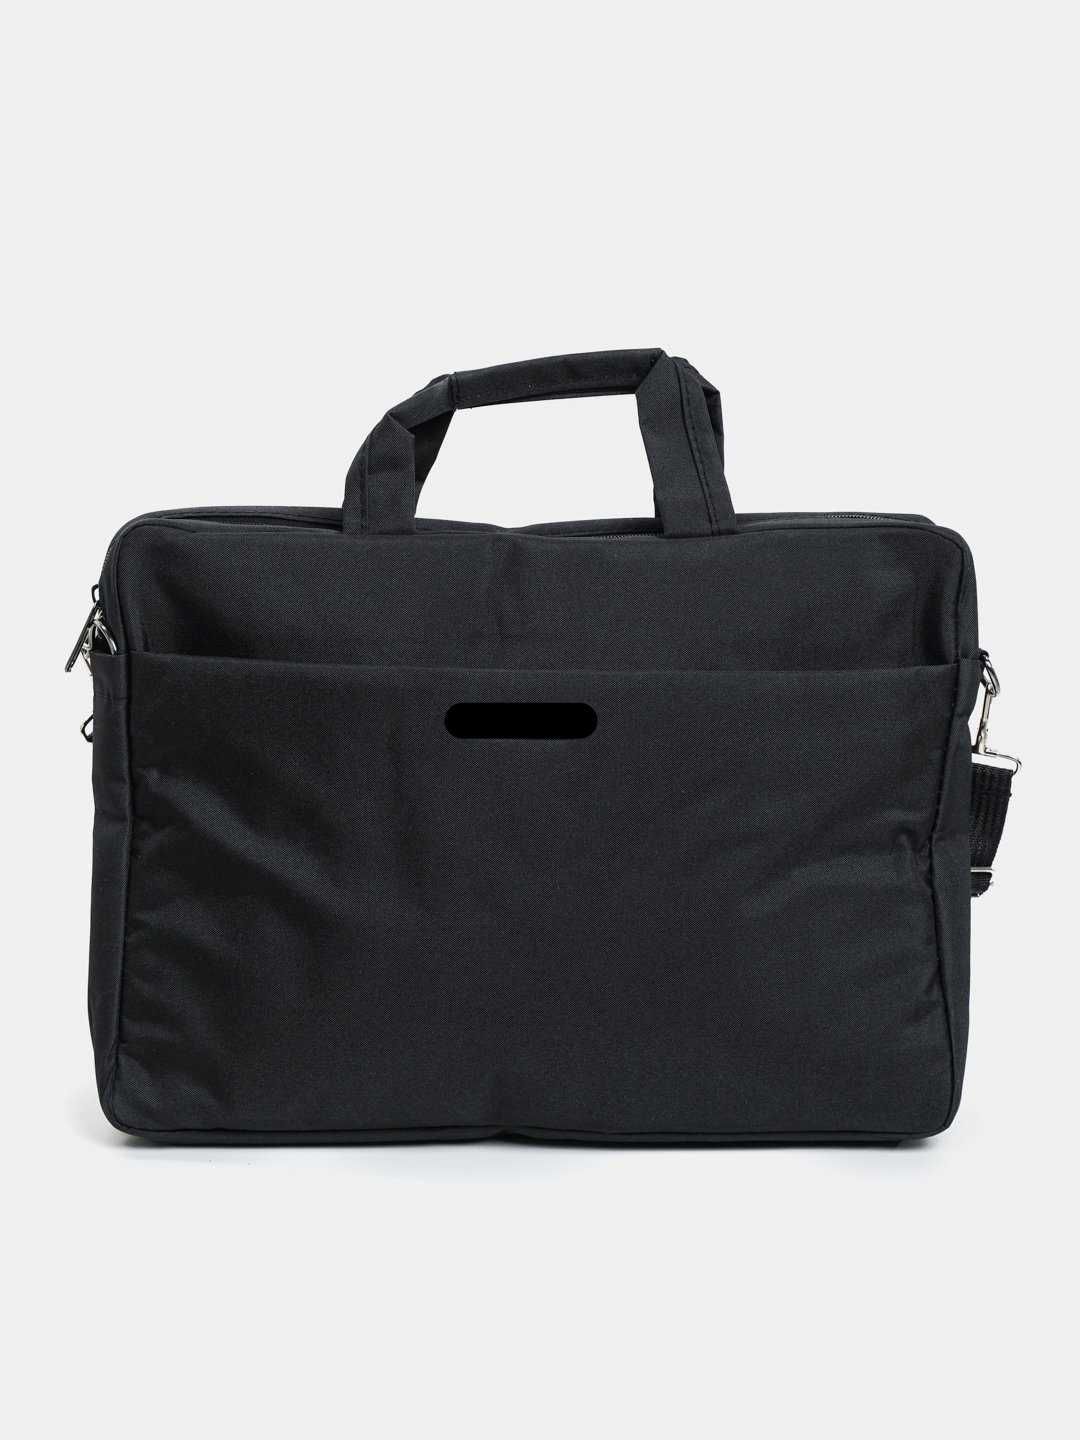 Продаётся новая сумка для ноутбука 15,6" Grey (Серый)